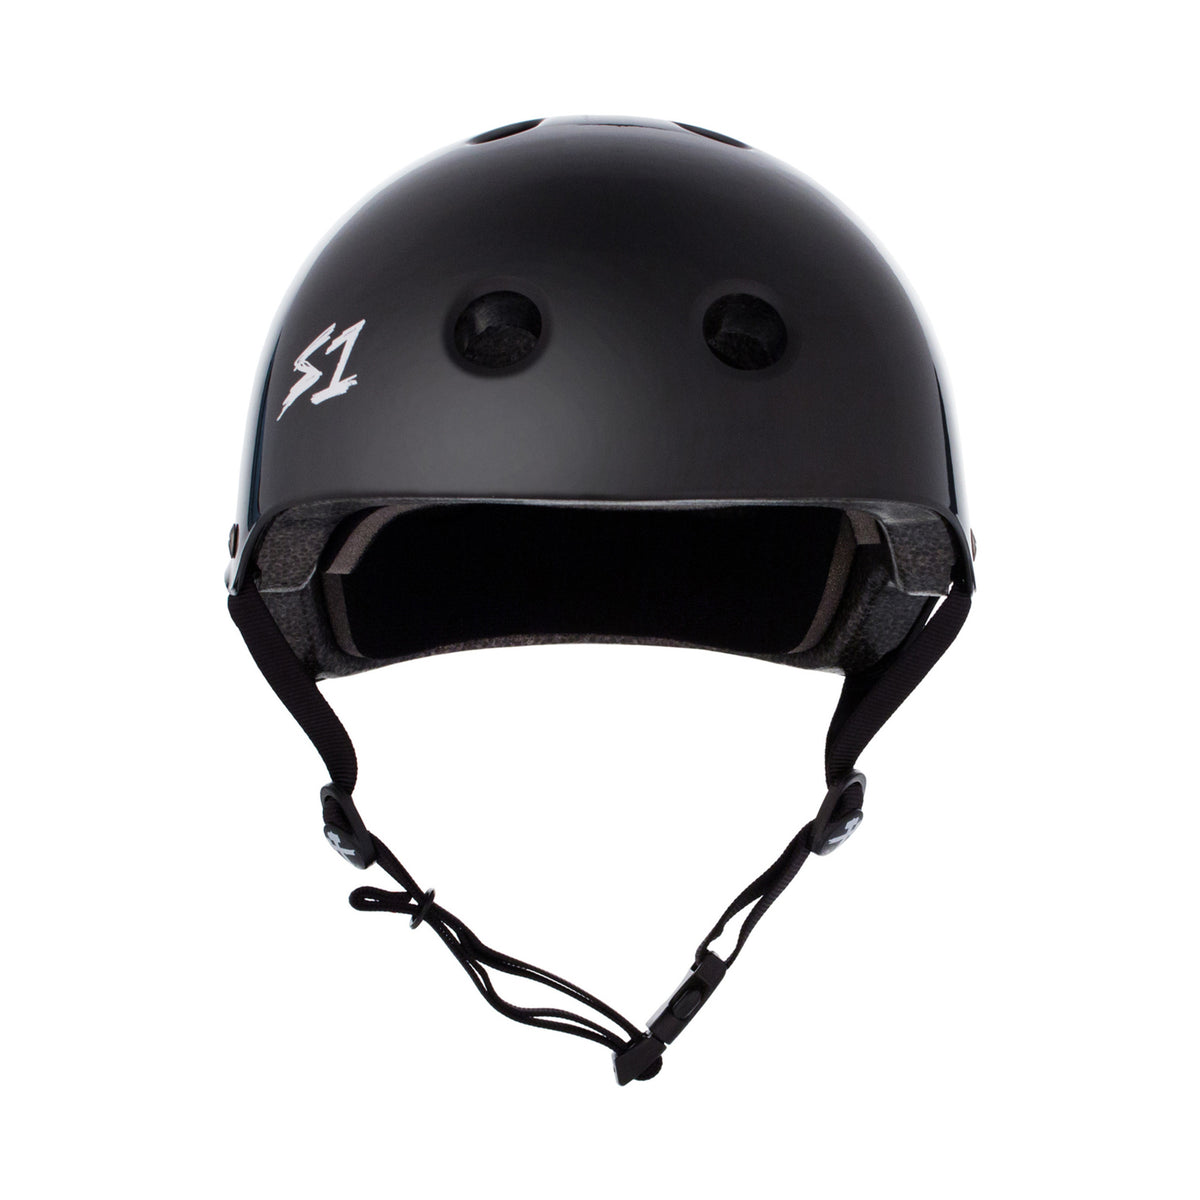 S1 Lifer Helmet - Gloss Black